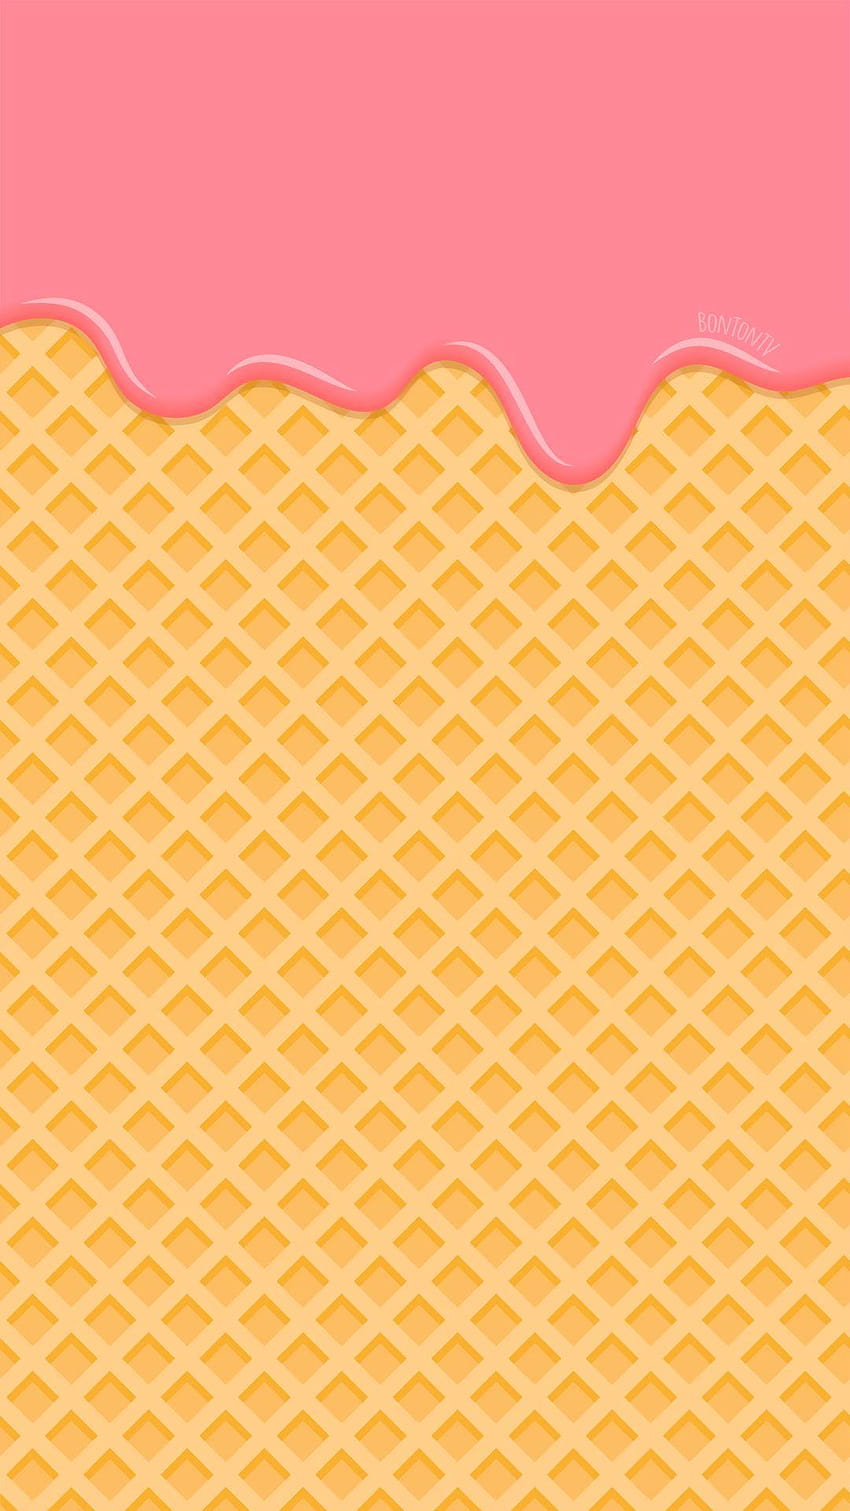 Teléfono rosa helado derretido en Waffle, helado derritiéndose fondo de pantalla del teléfono